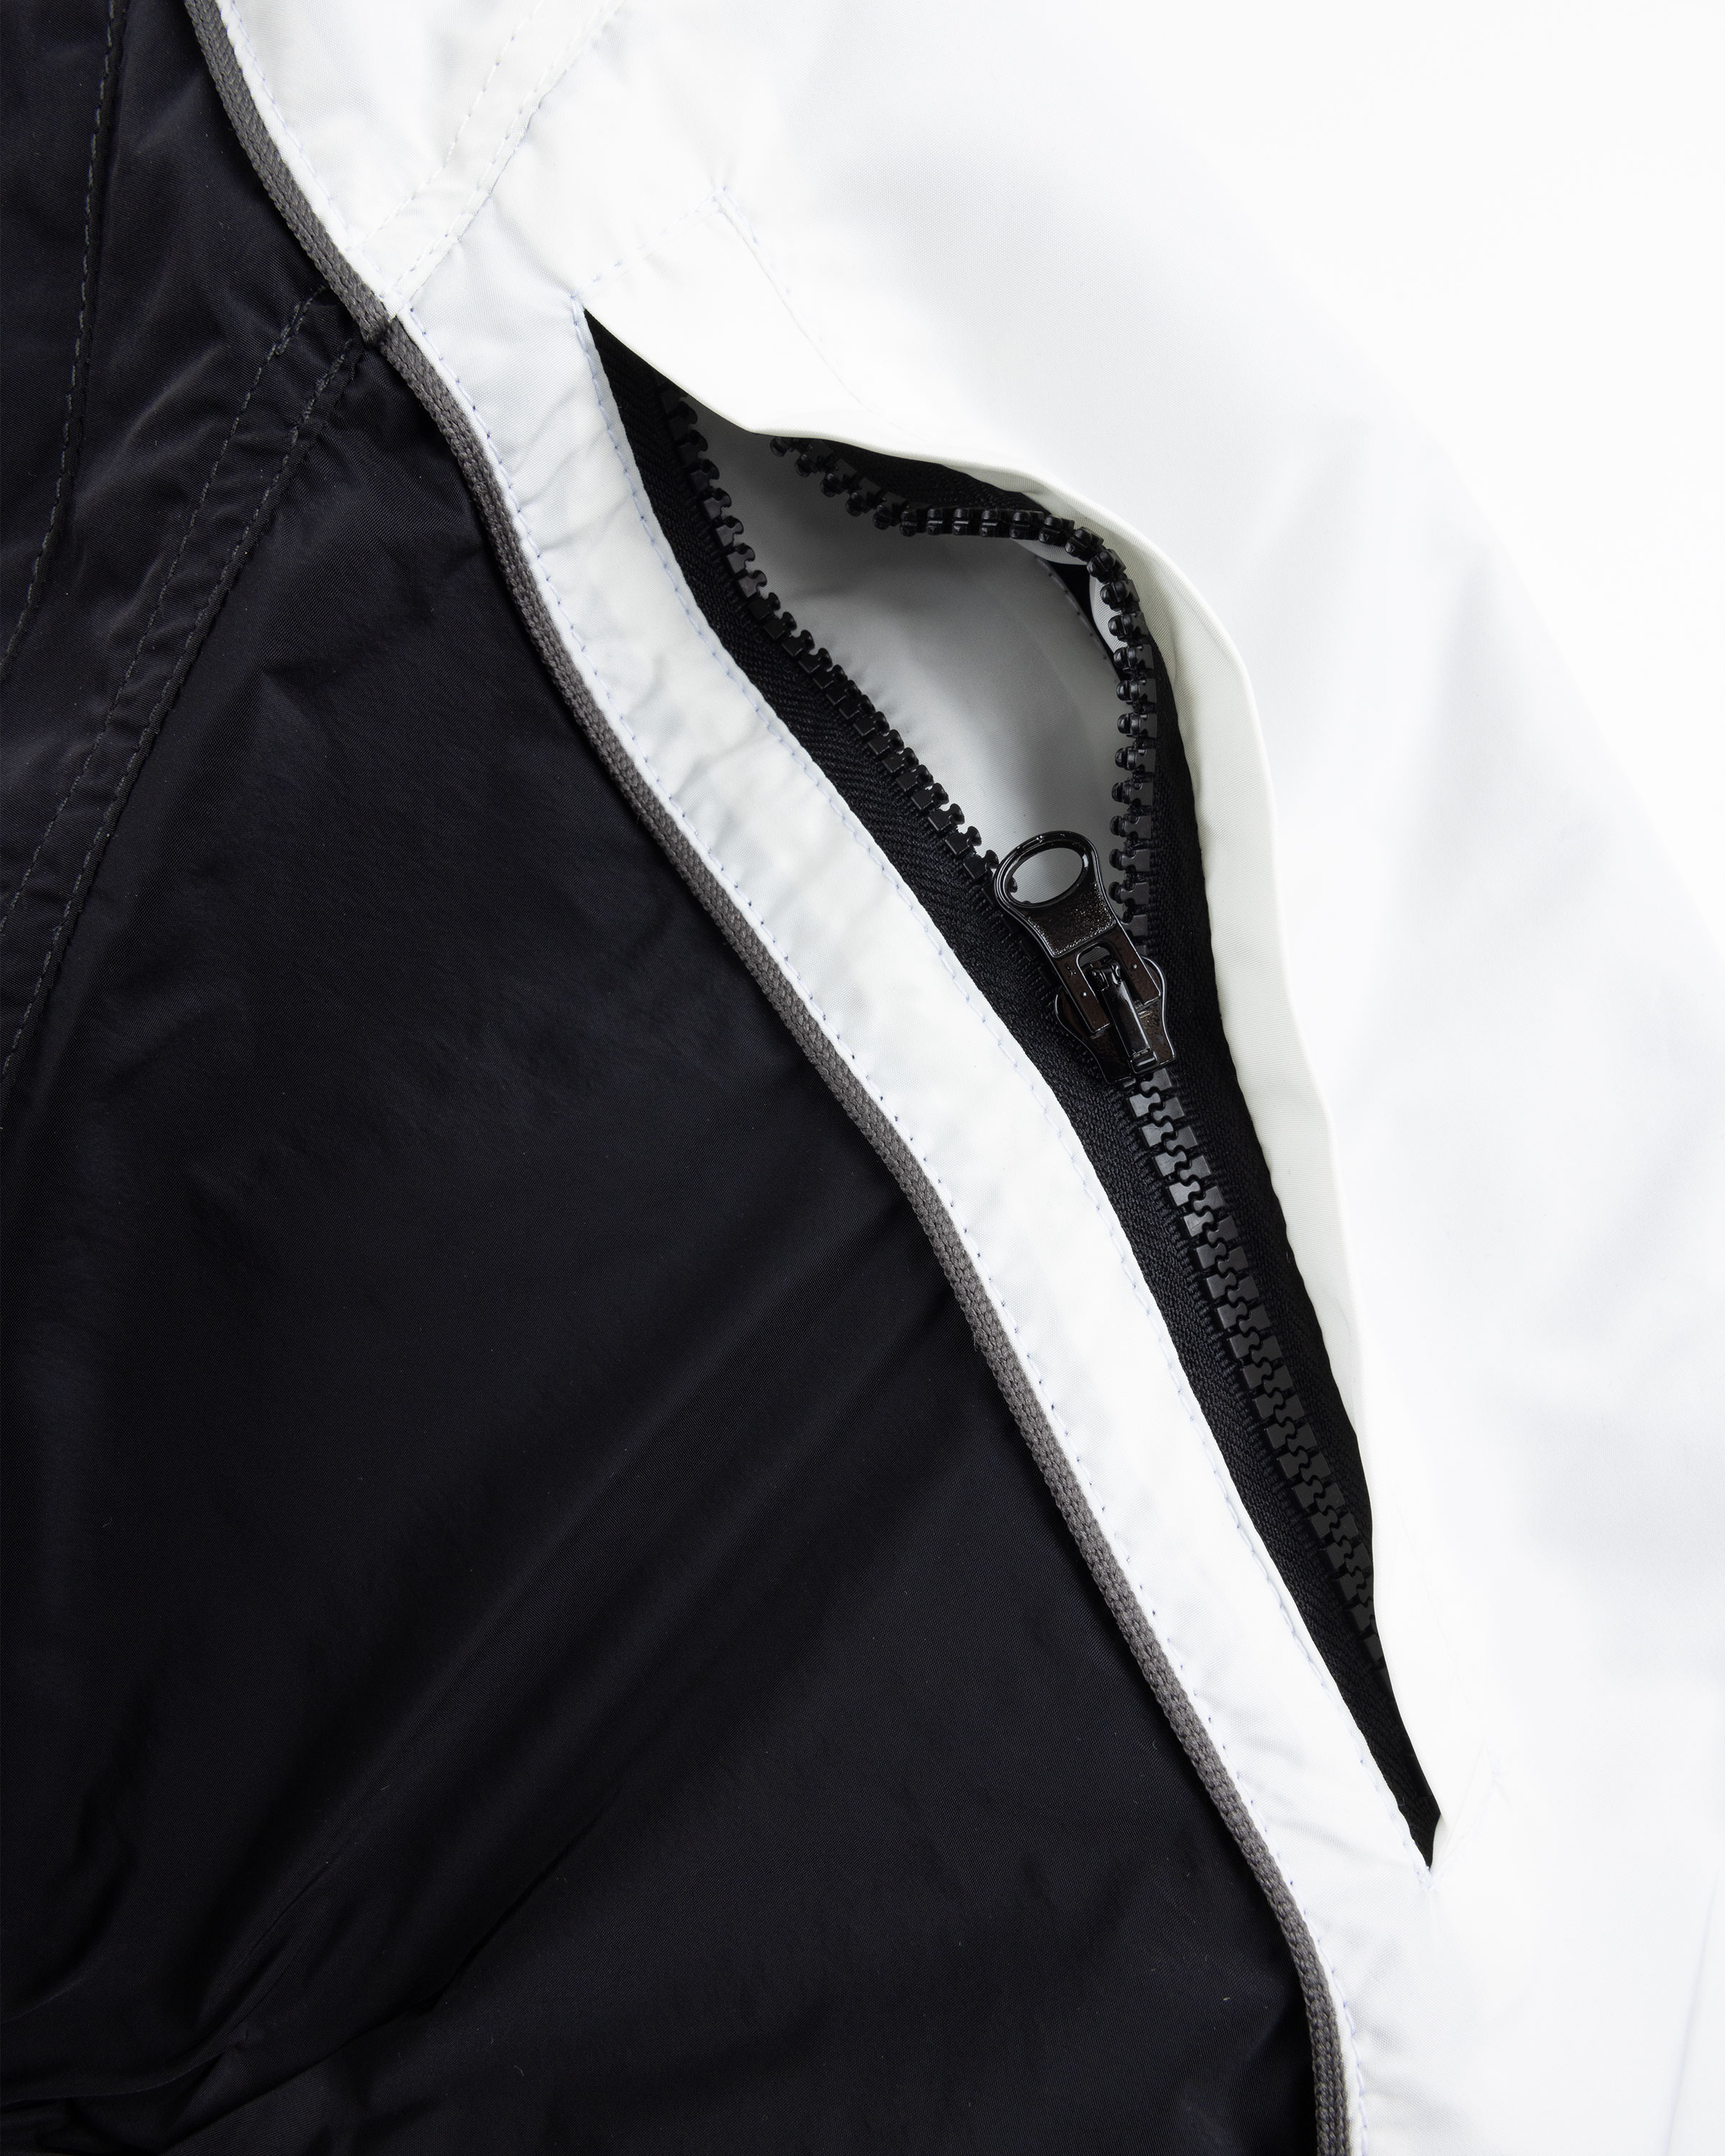 KUSIKOHC – Rider Jacket Black/Cannoli Cream - Outerwear - Black - Image 6